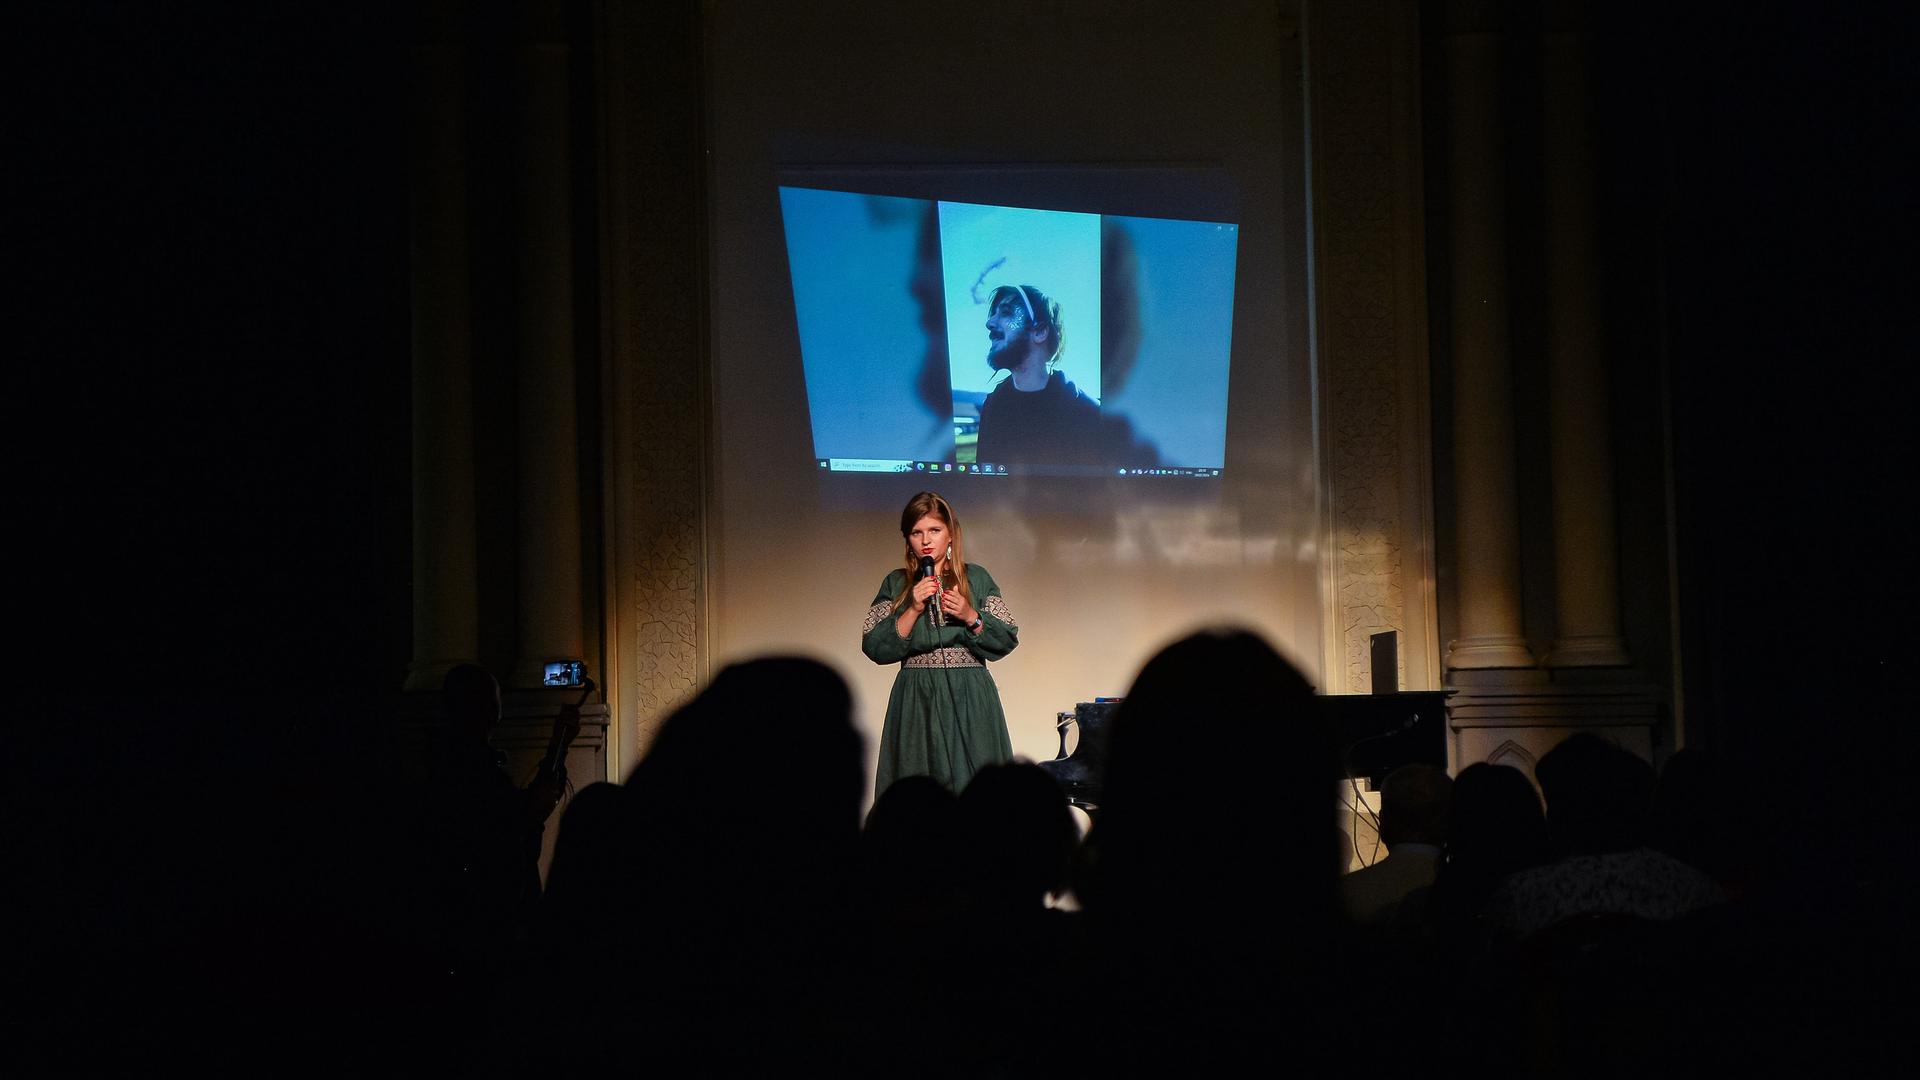 Bei einer Veranstaltung in Kiew wird an den im Krieg gefallenen Dichter Maksym Kryvtsov erinnert. Sein Porträt ist beleuchtet, im Vordergrund ist das Publikum im Dunkeln, eine Frau spricht. 
